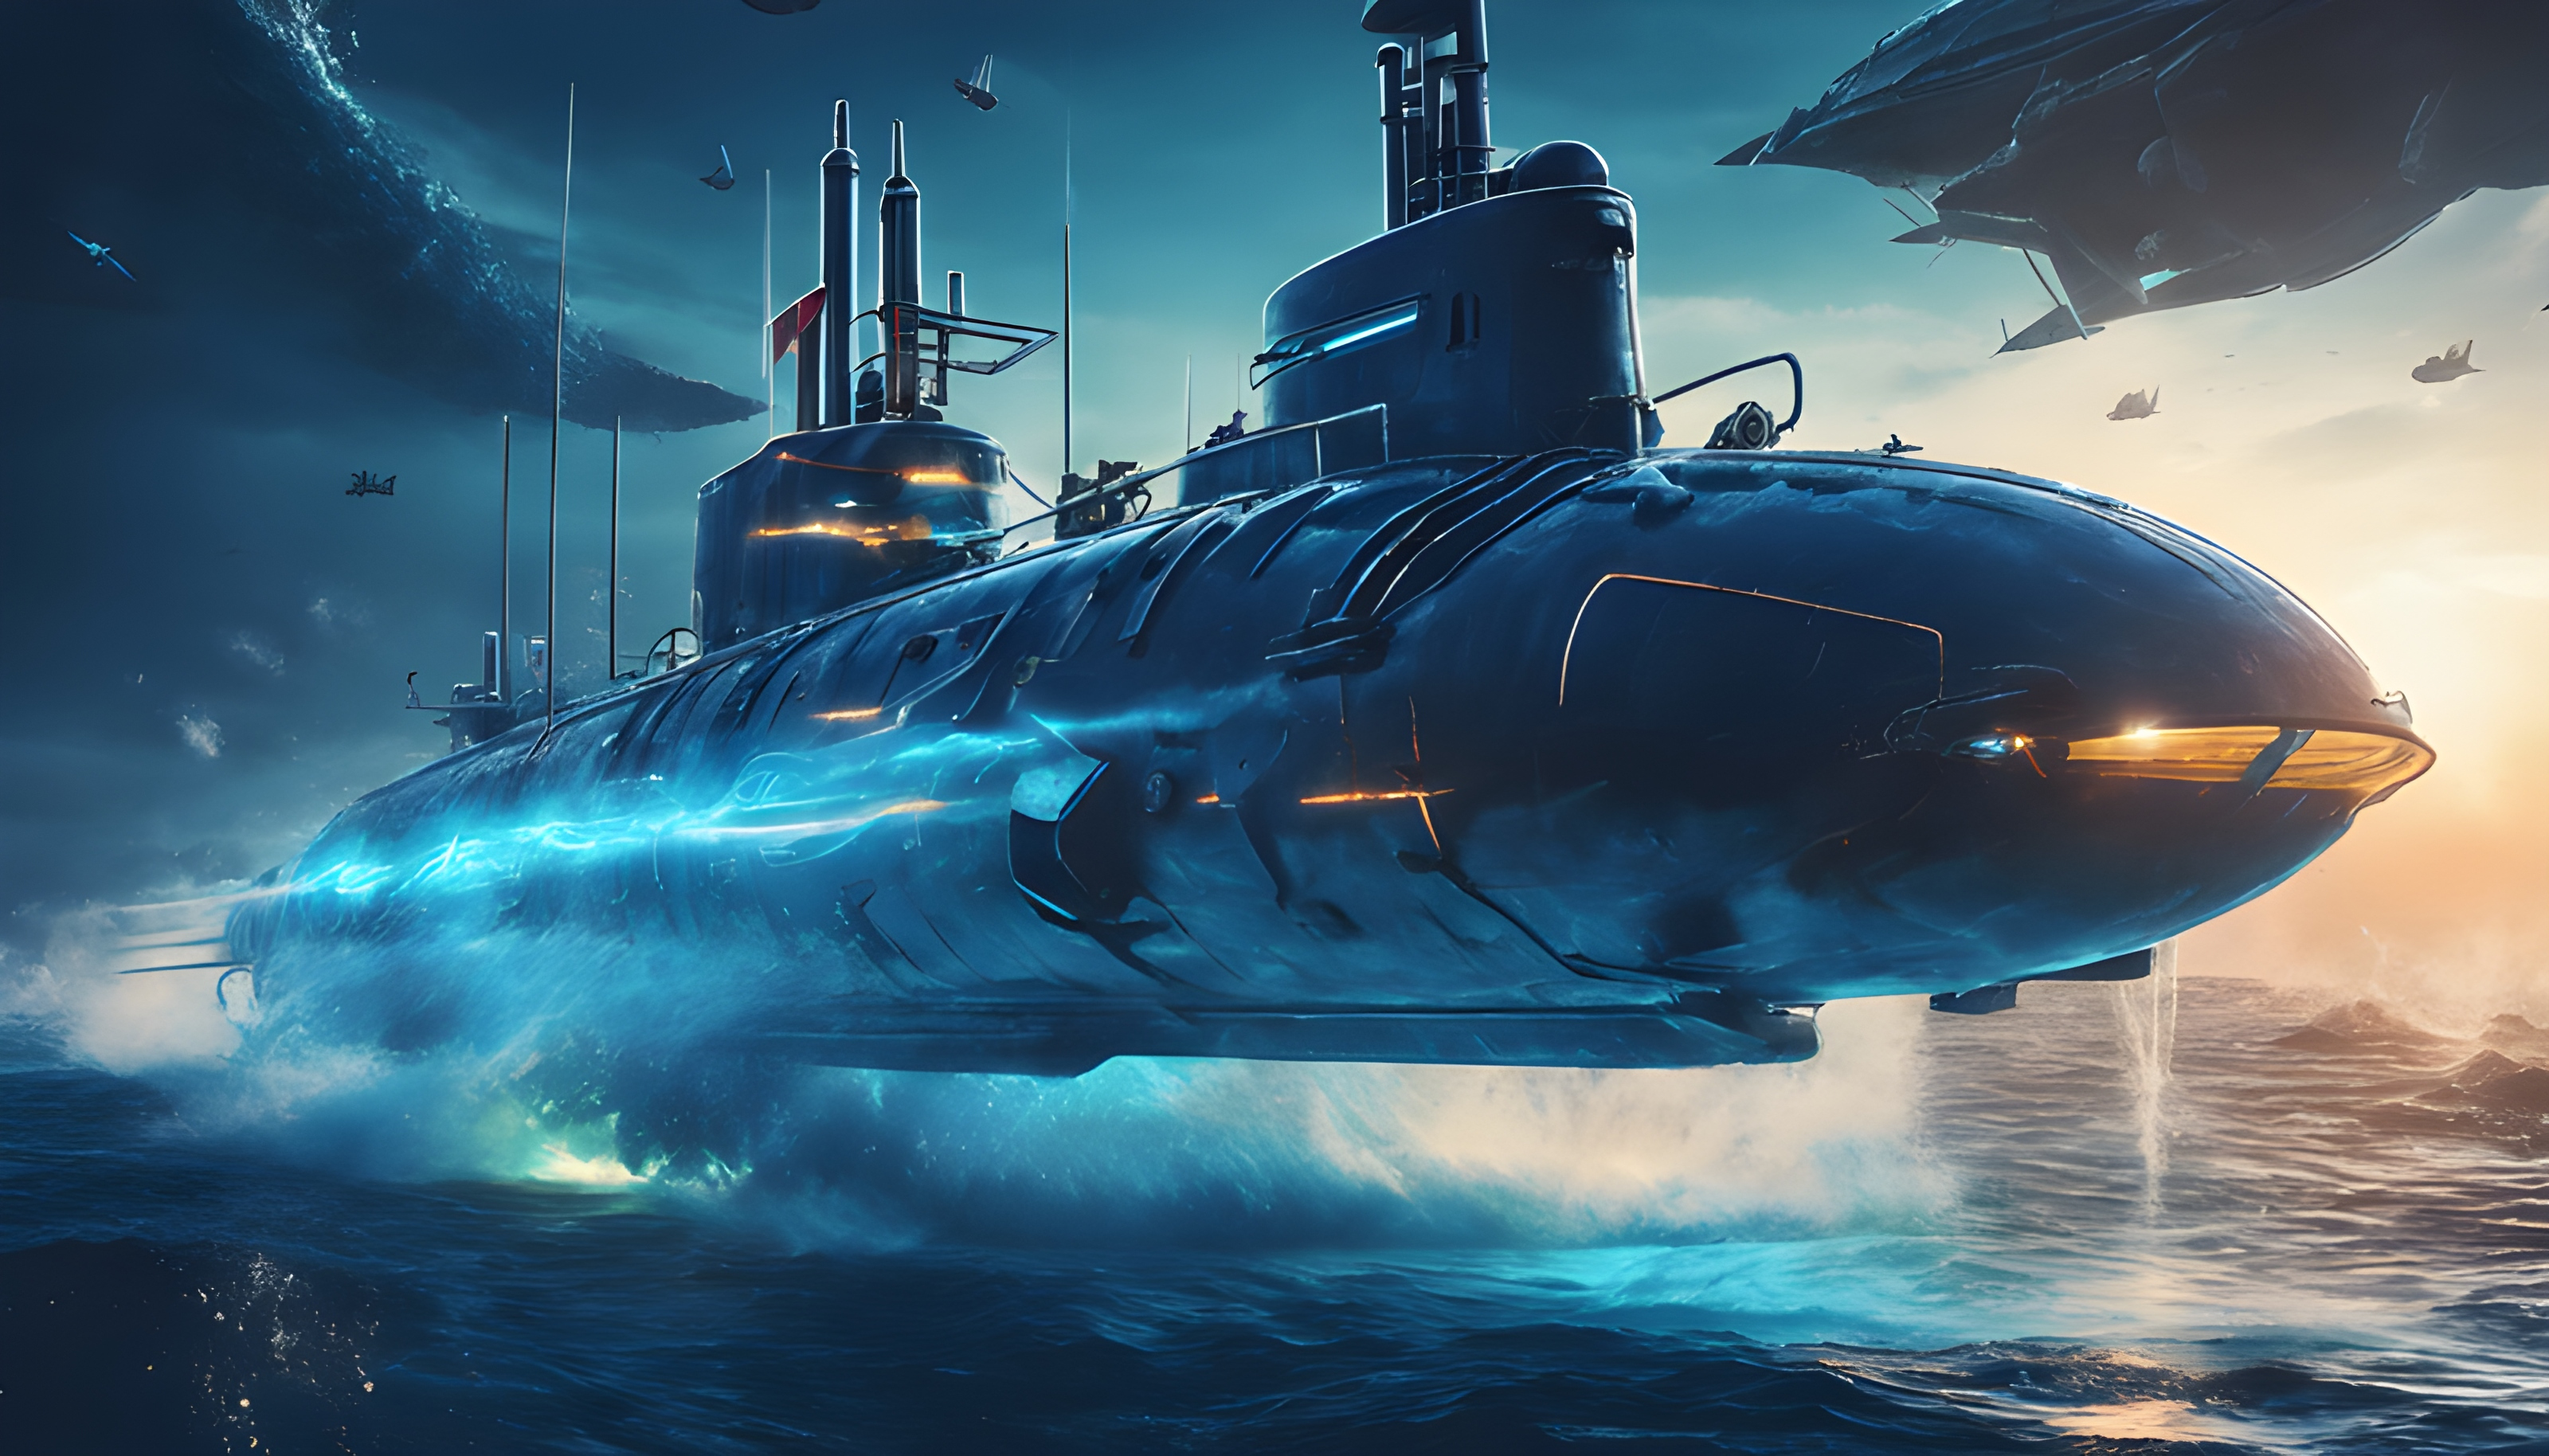 สร้างภาพกราฟฟิคเกมต่อสู้เรือดำน้ำใต้ทะเล ธีมทหาร ฉากหลังเรียบๆ สีฟ้า